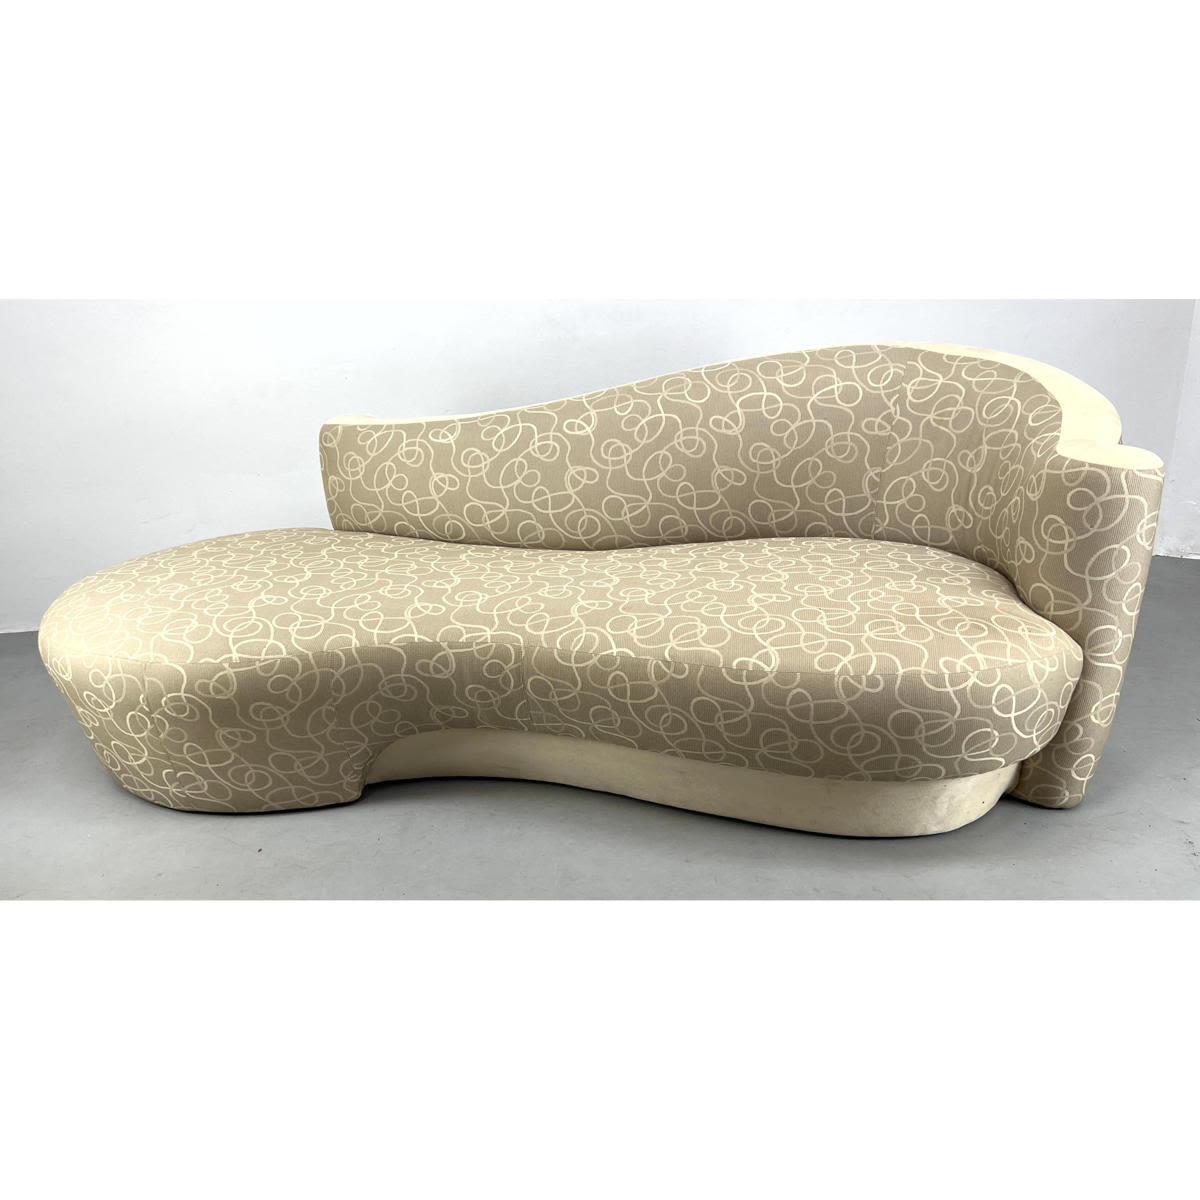 Weiman Kagan style serpentine sofa